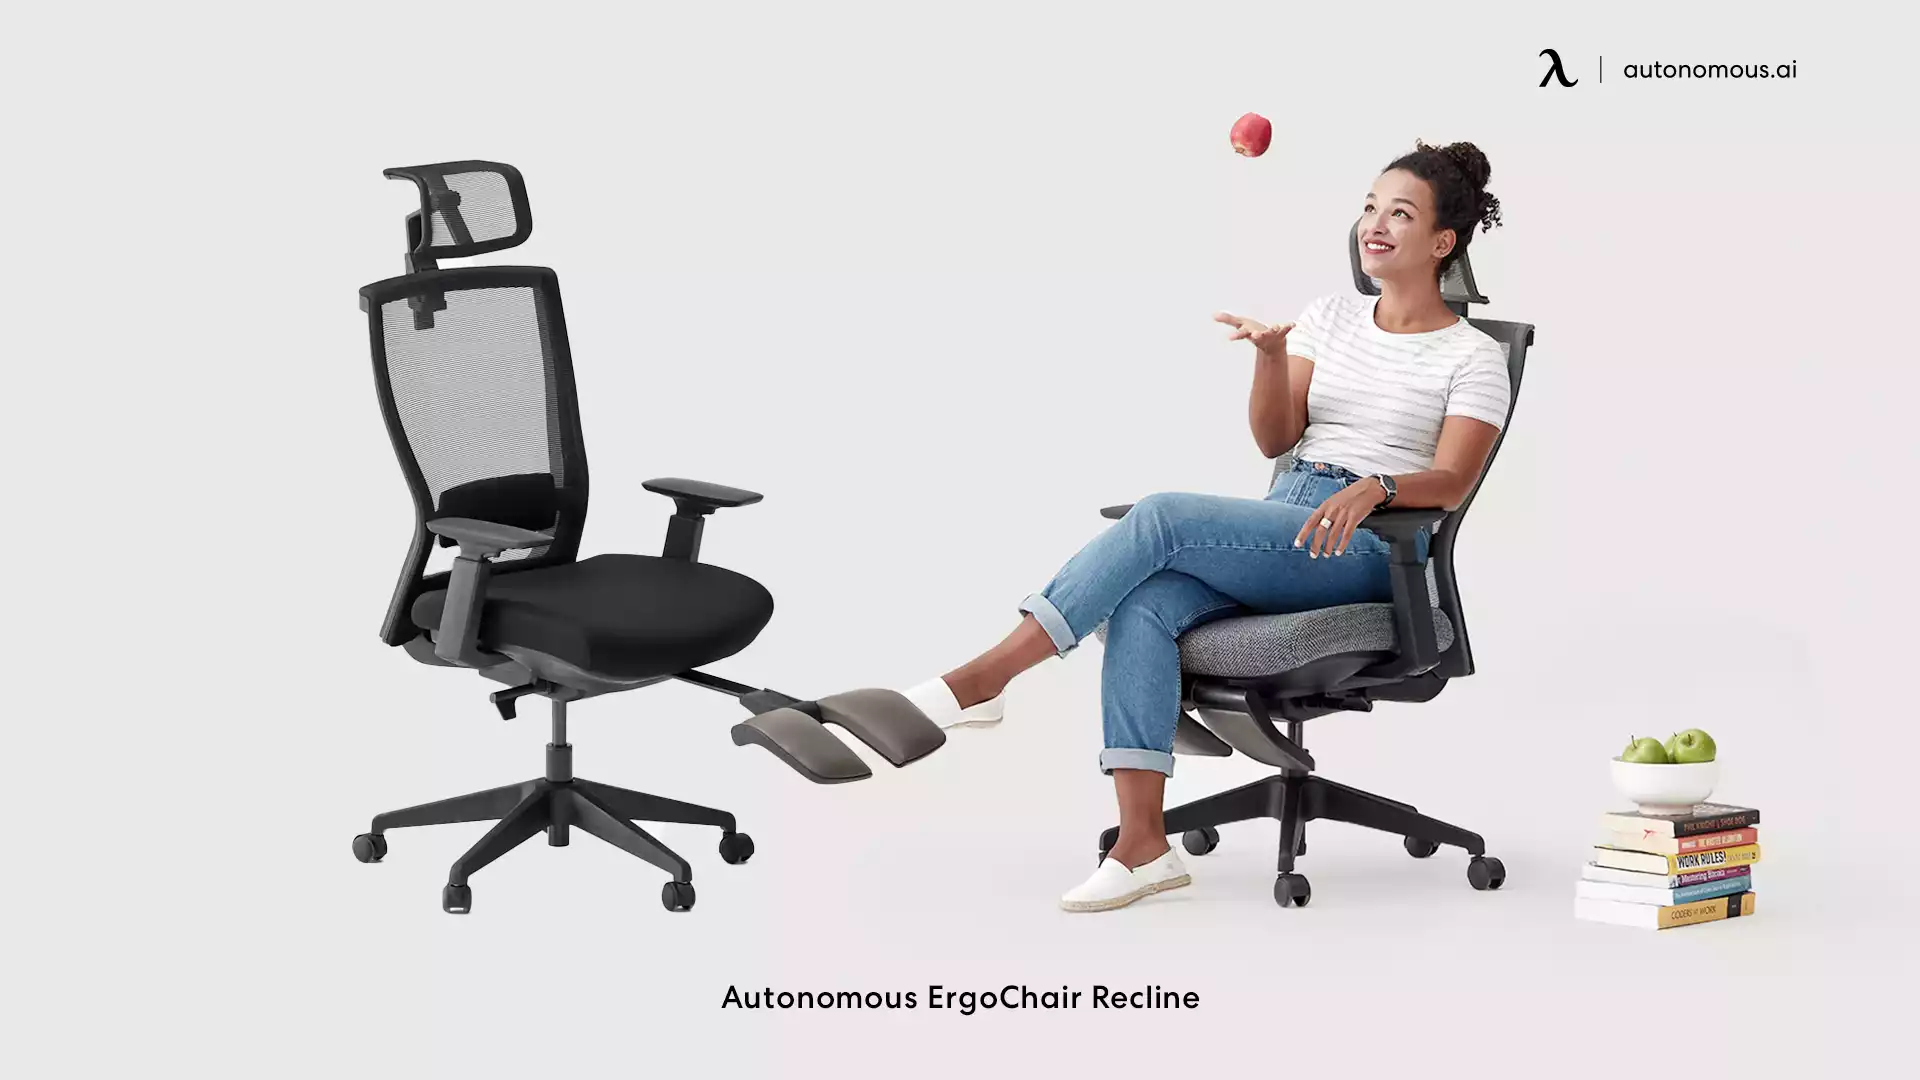 ErgoChair Recline stationary office chair